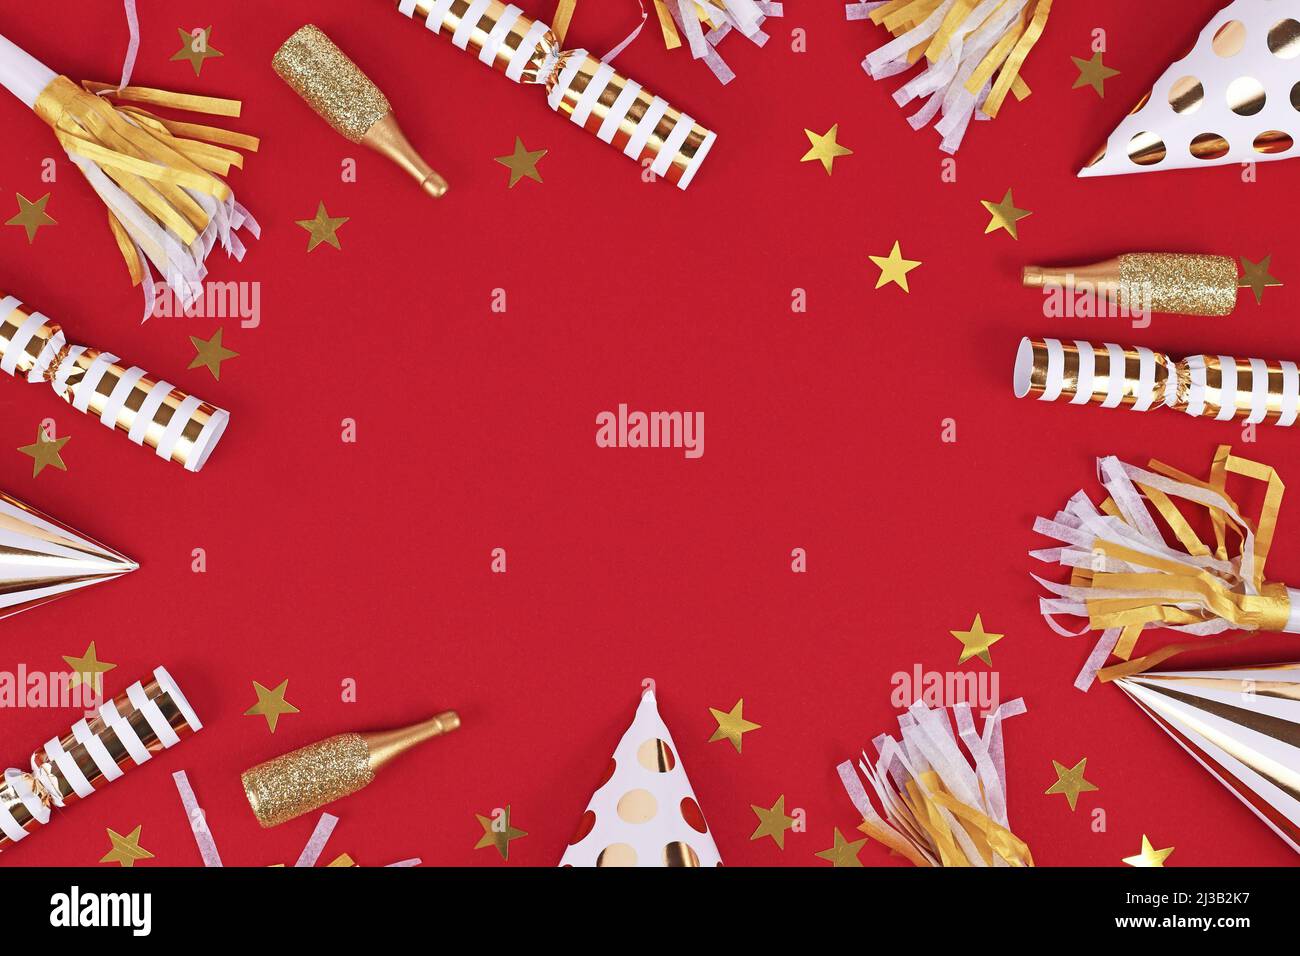 Goldene Party-Objekte wie Hüte, Konfetti und Geschenke bilden Rahmen um roten Hintergrund Stockfoto